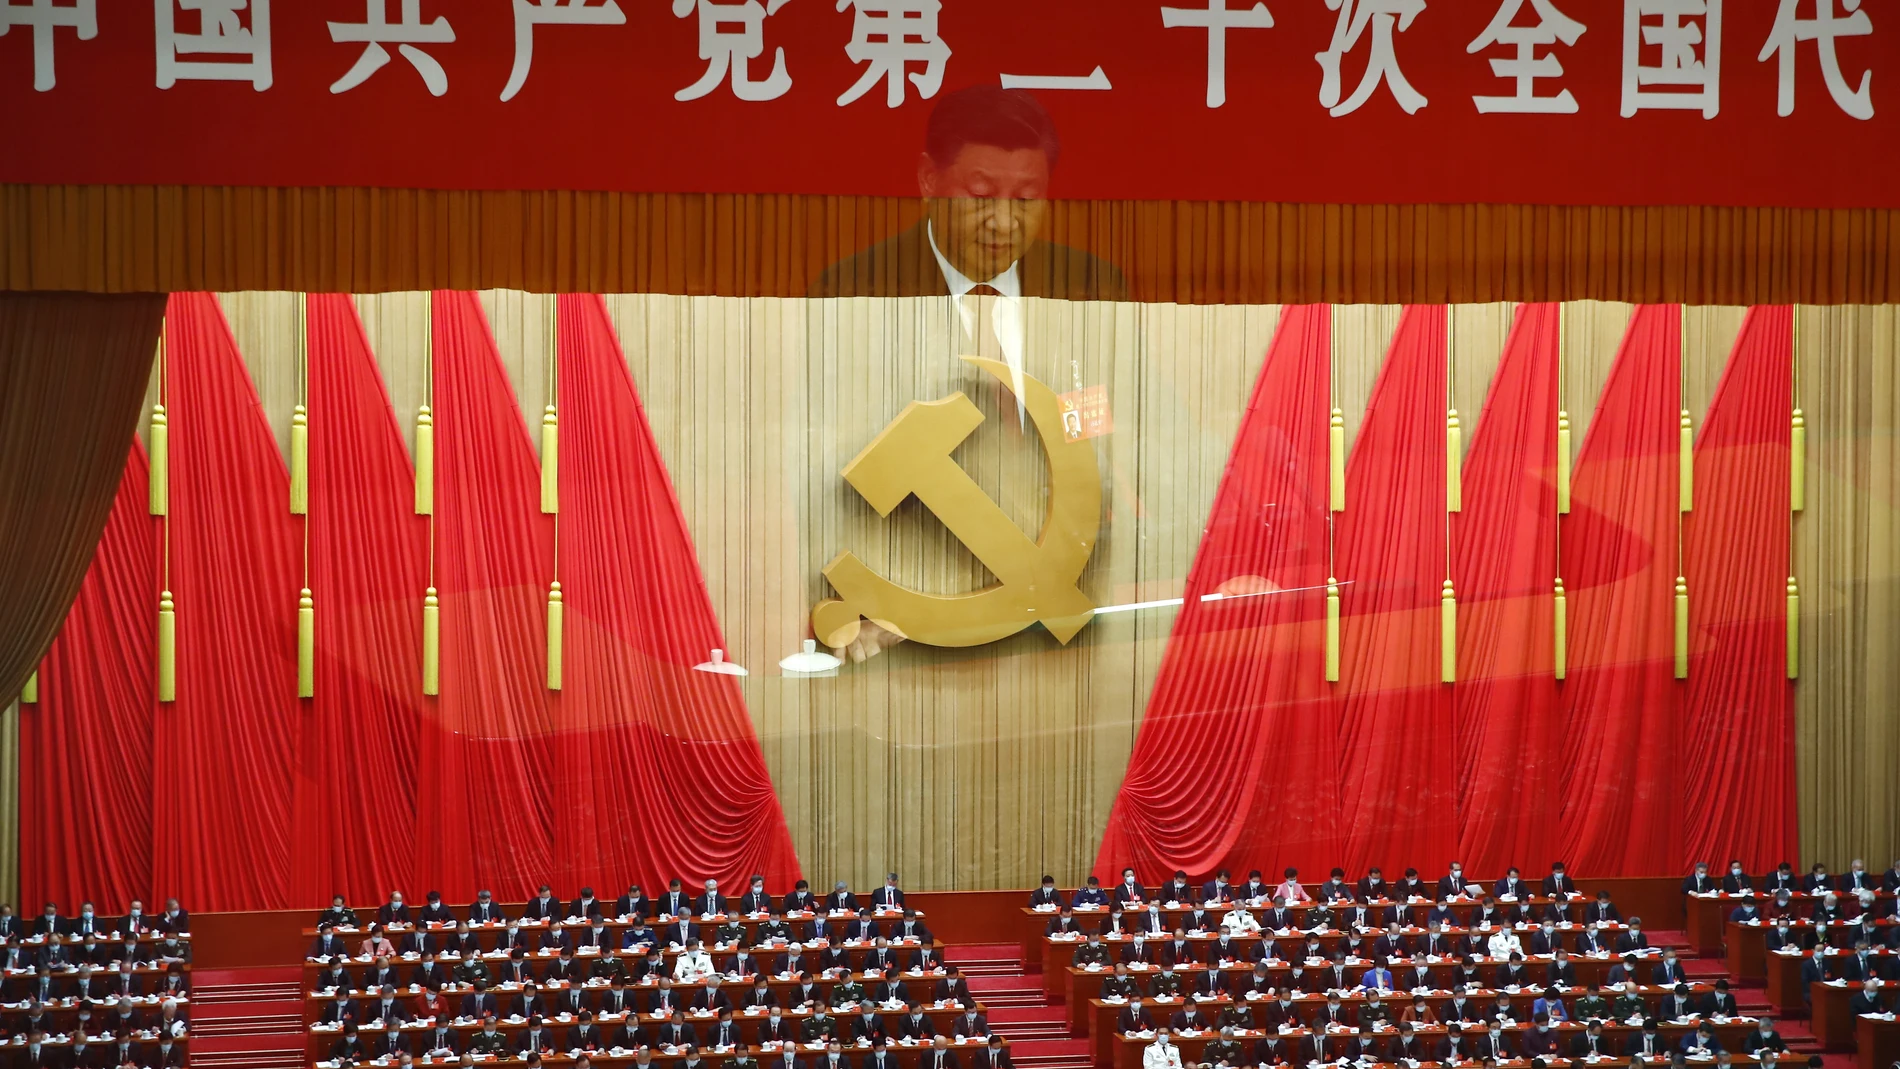 XI Jinping inaugura el XX Congreso del Partido Comunista Chino en el Palacio del Pueblo de Pekín